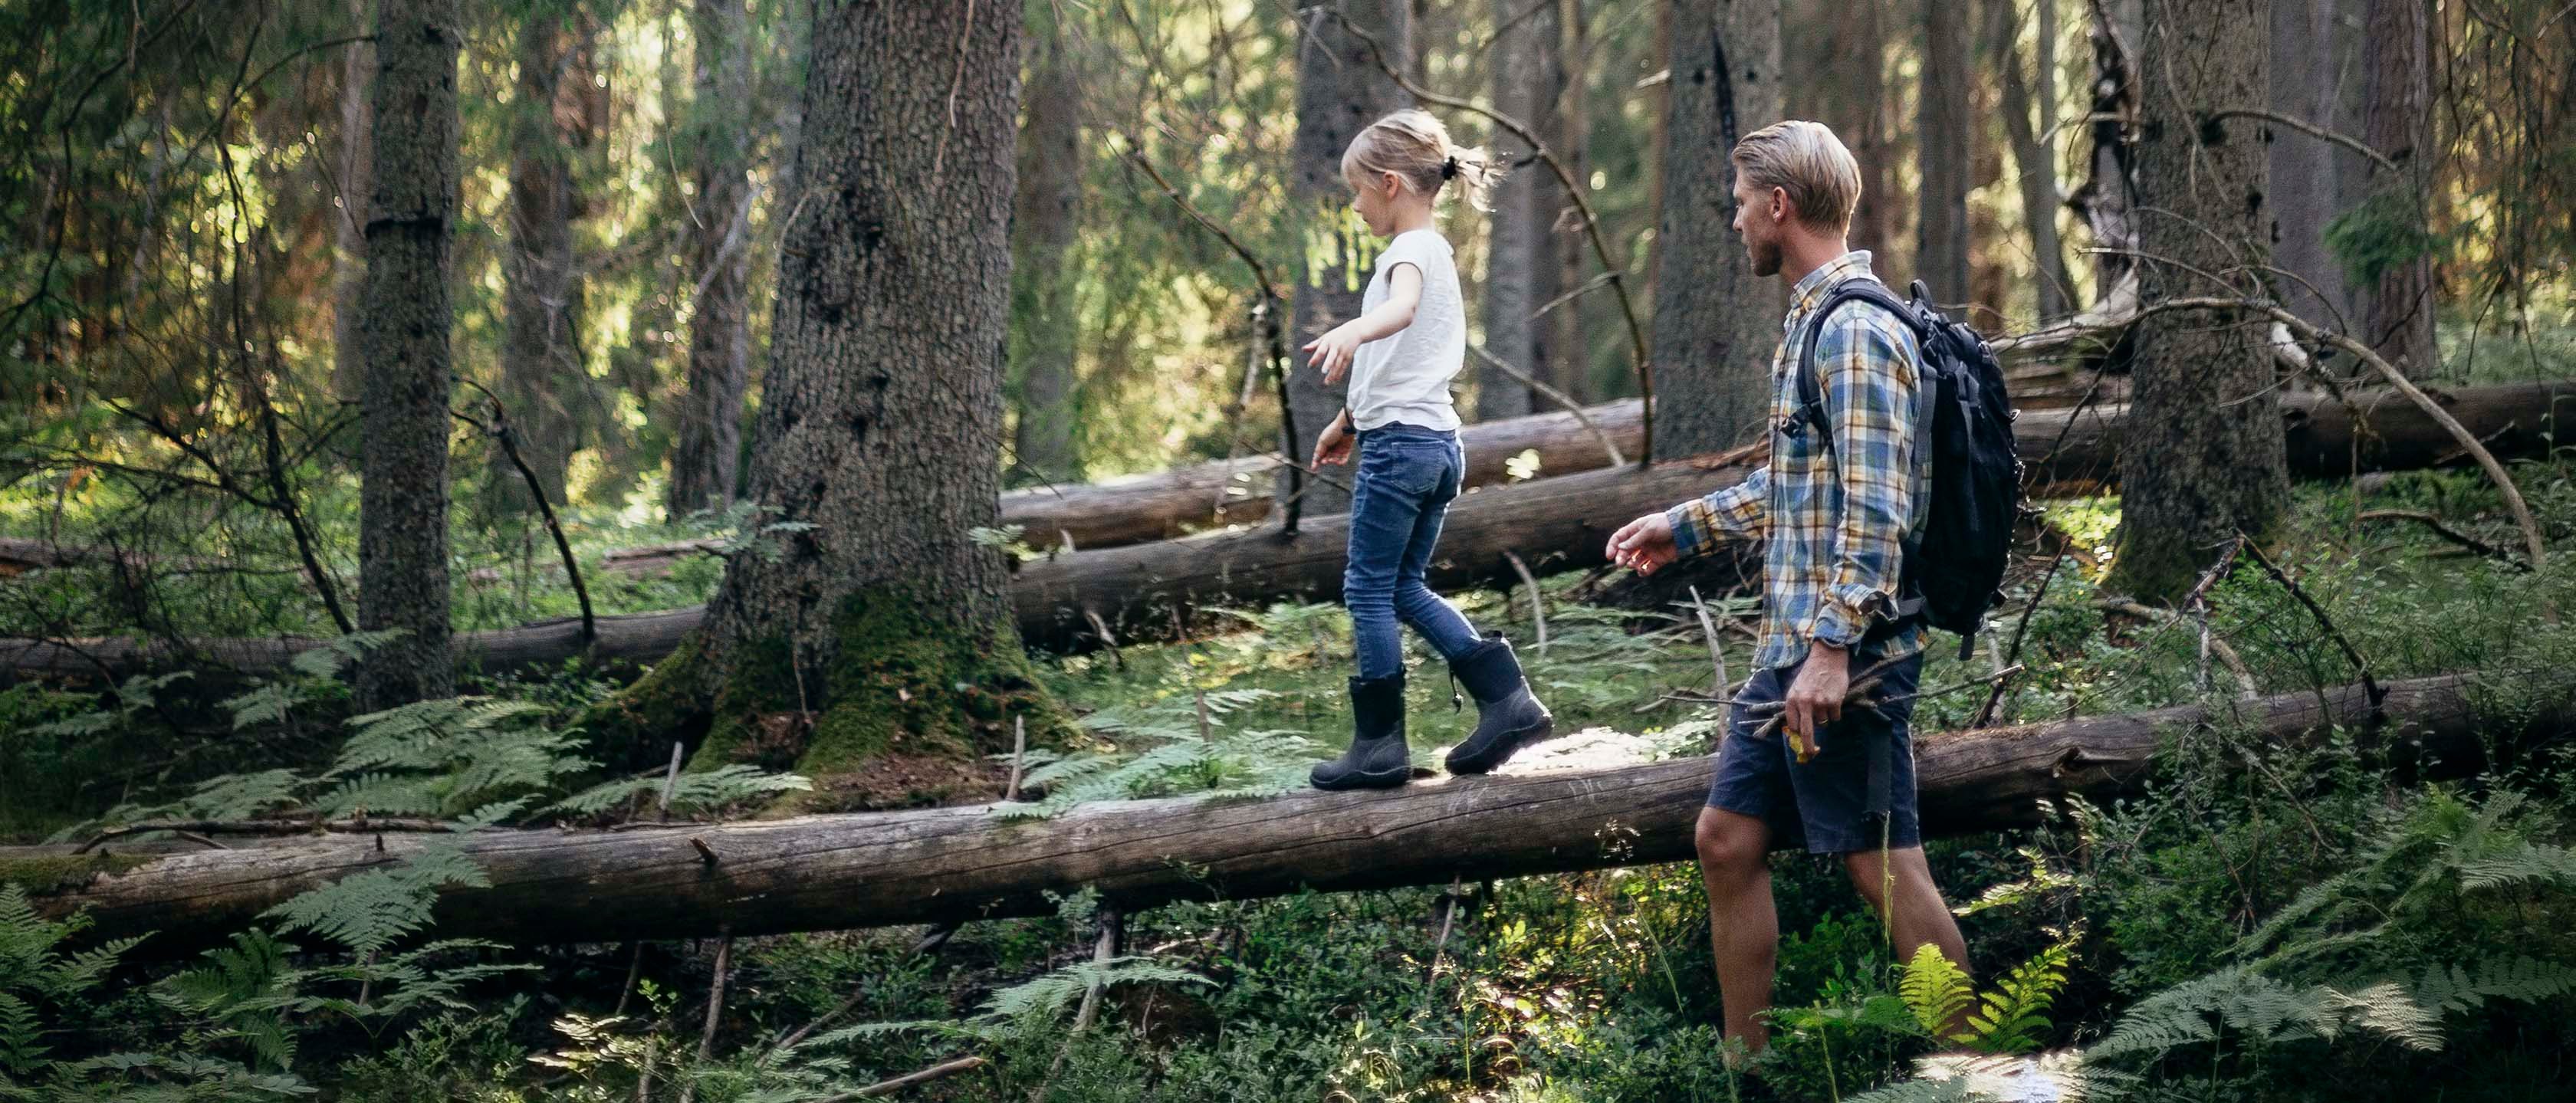 Far og datter balanserer på felte trær i skogen.